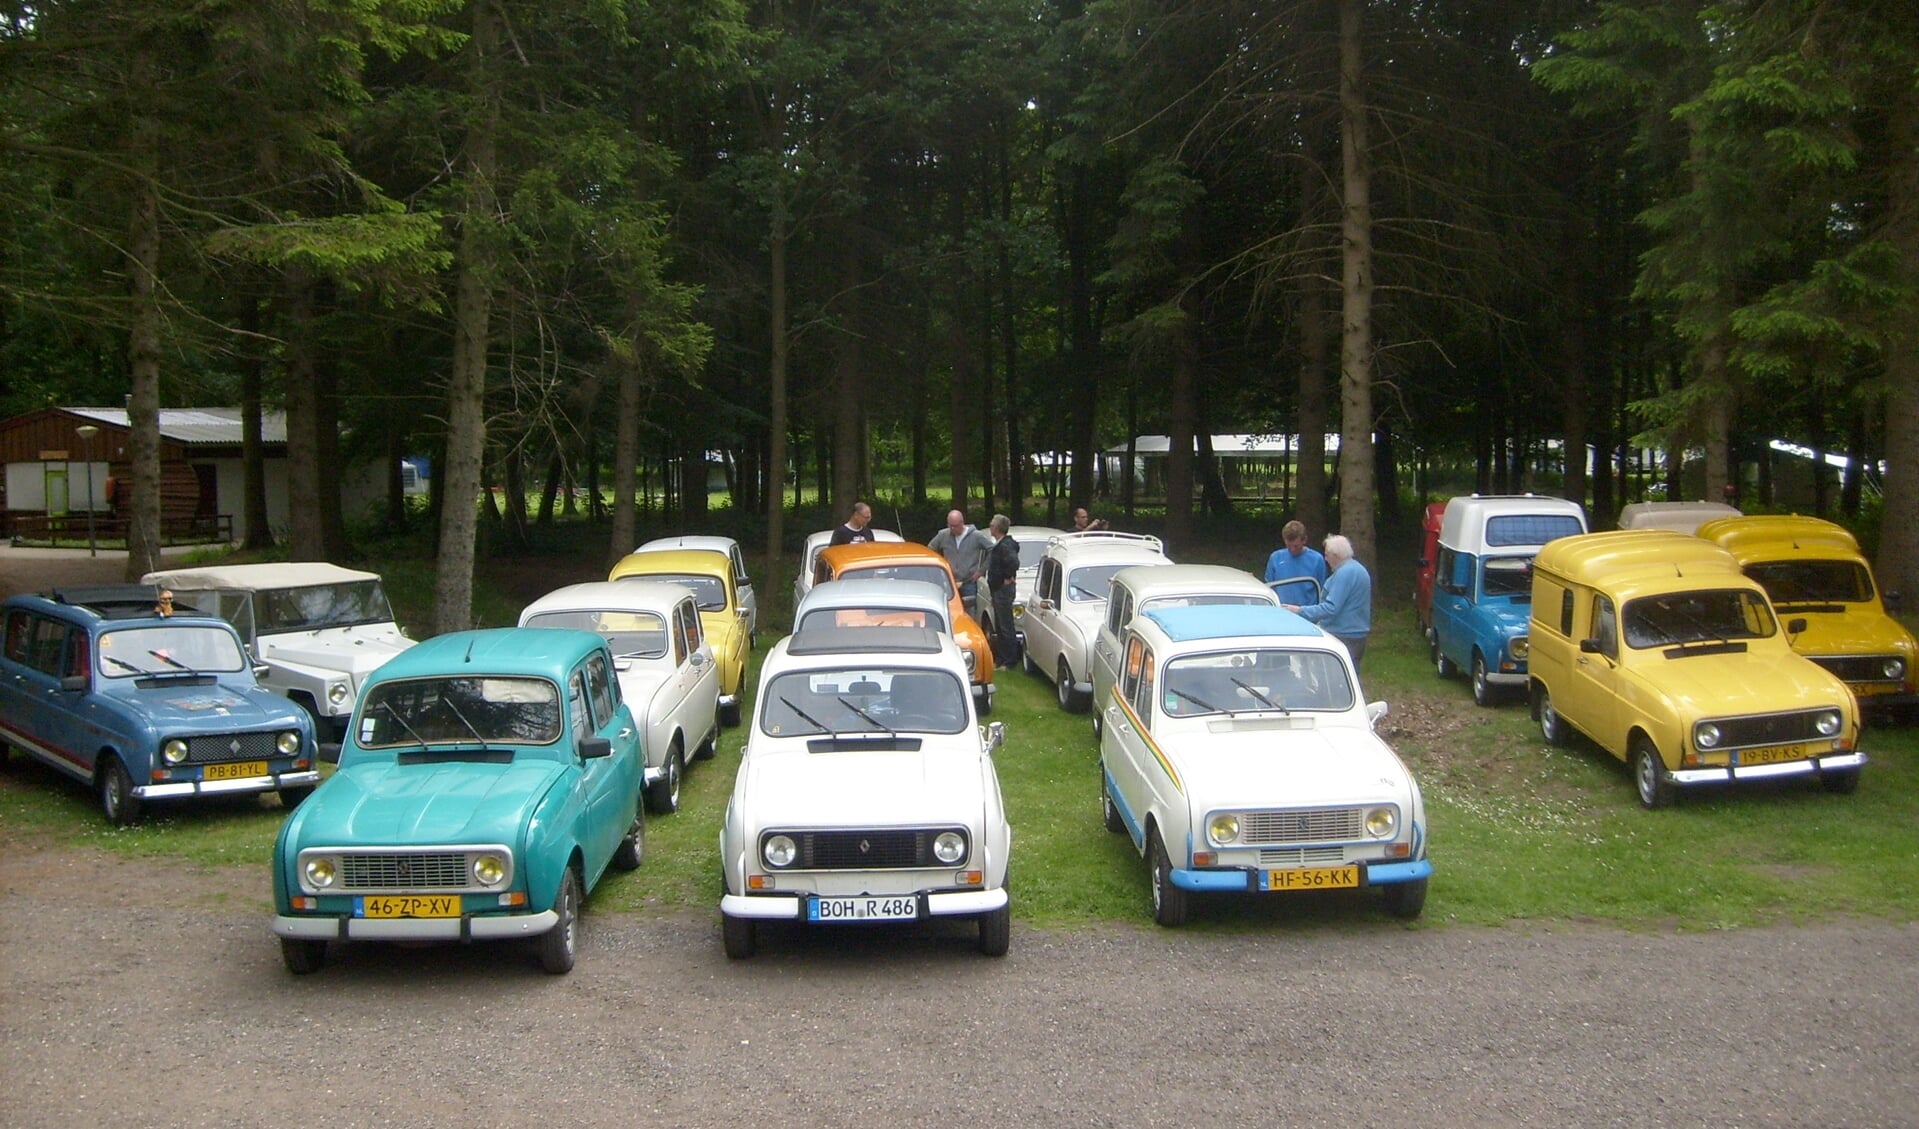 De Renault 4 club tijdens een eerdere bijeenkomst. Foto: Matthieu Notten